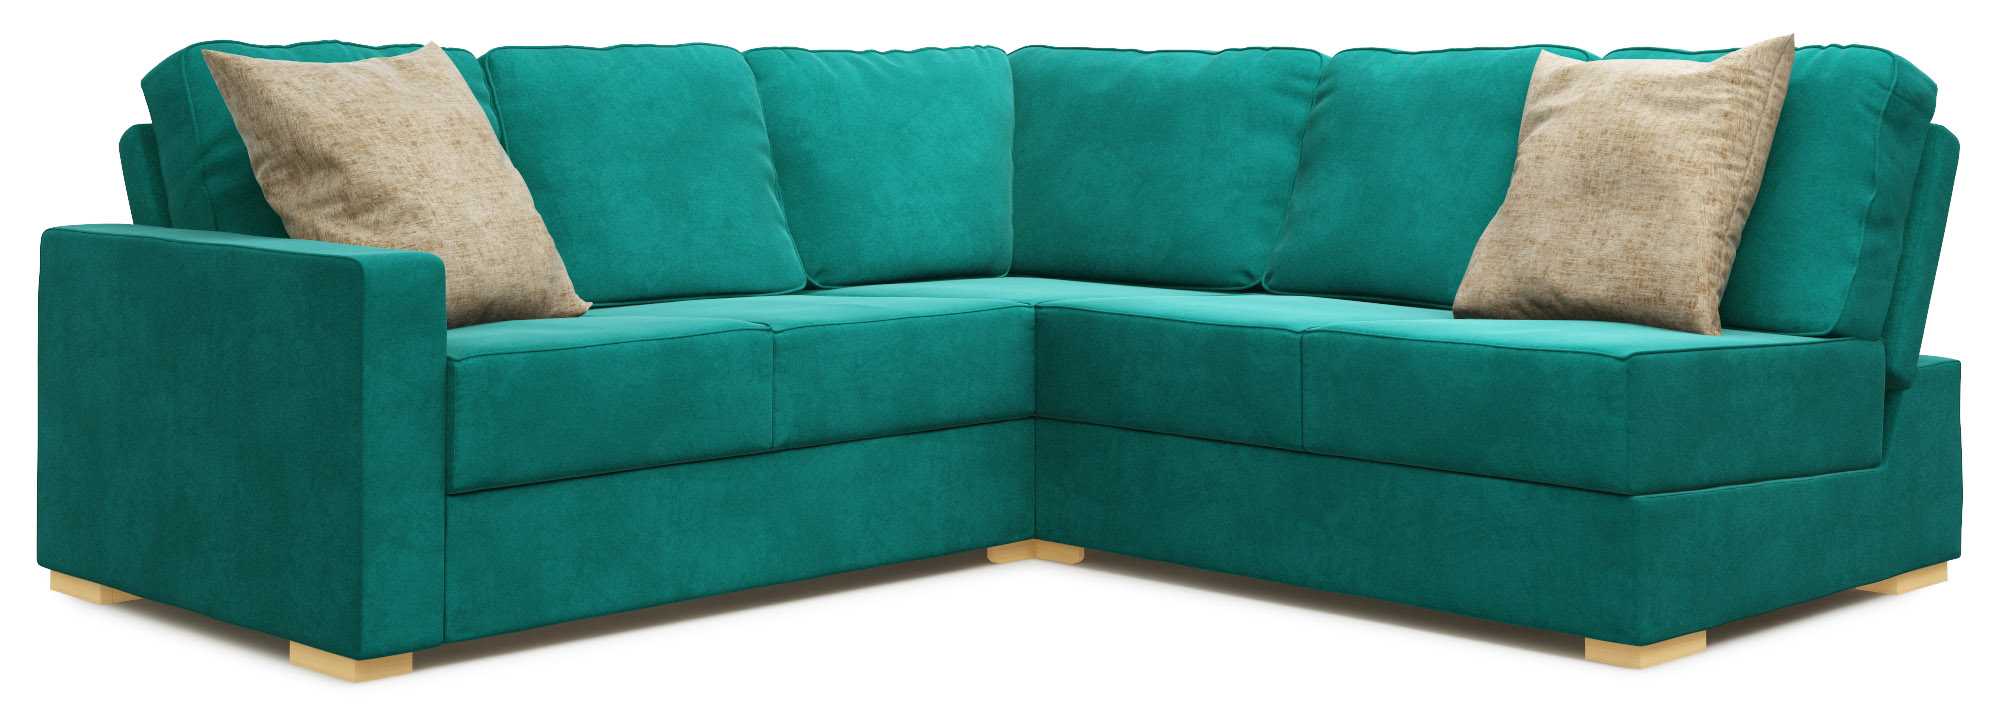 Lear Armless 3X3 Single Sofa Bed